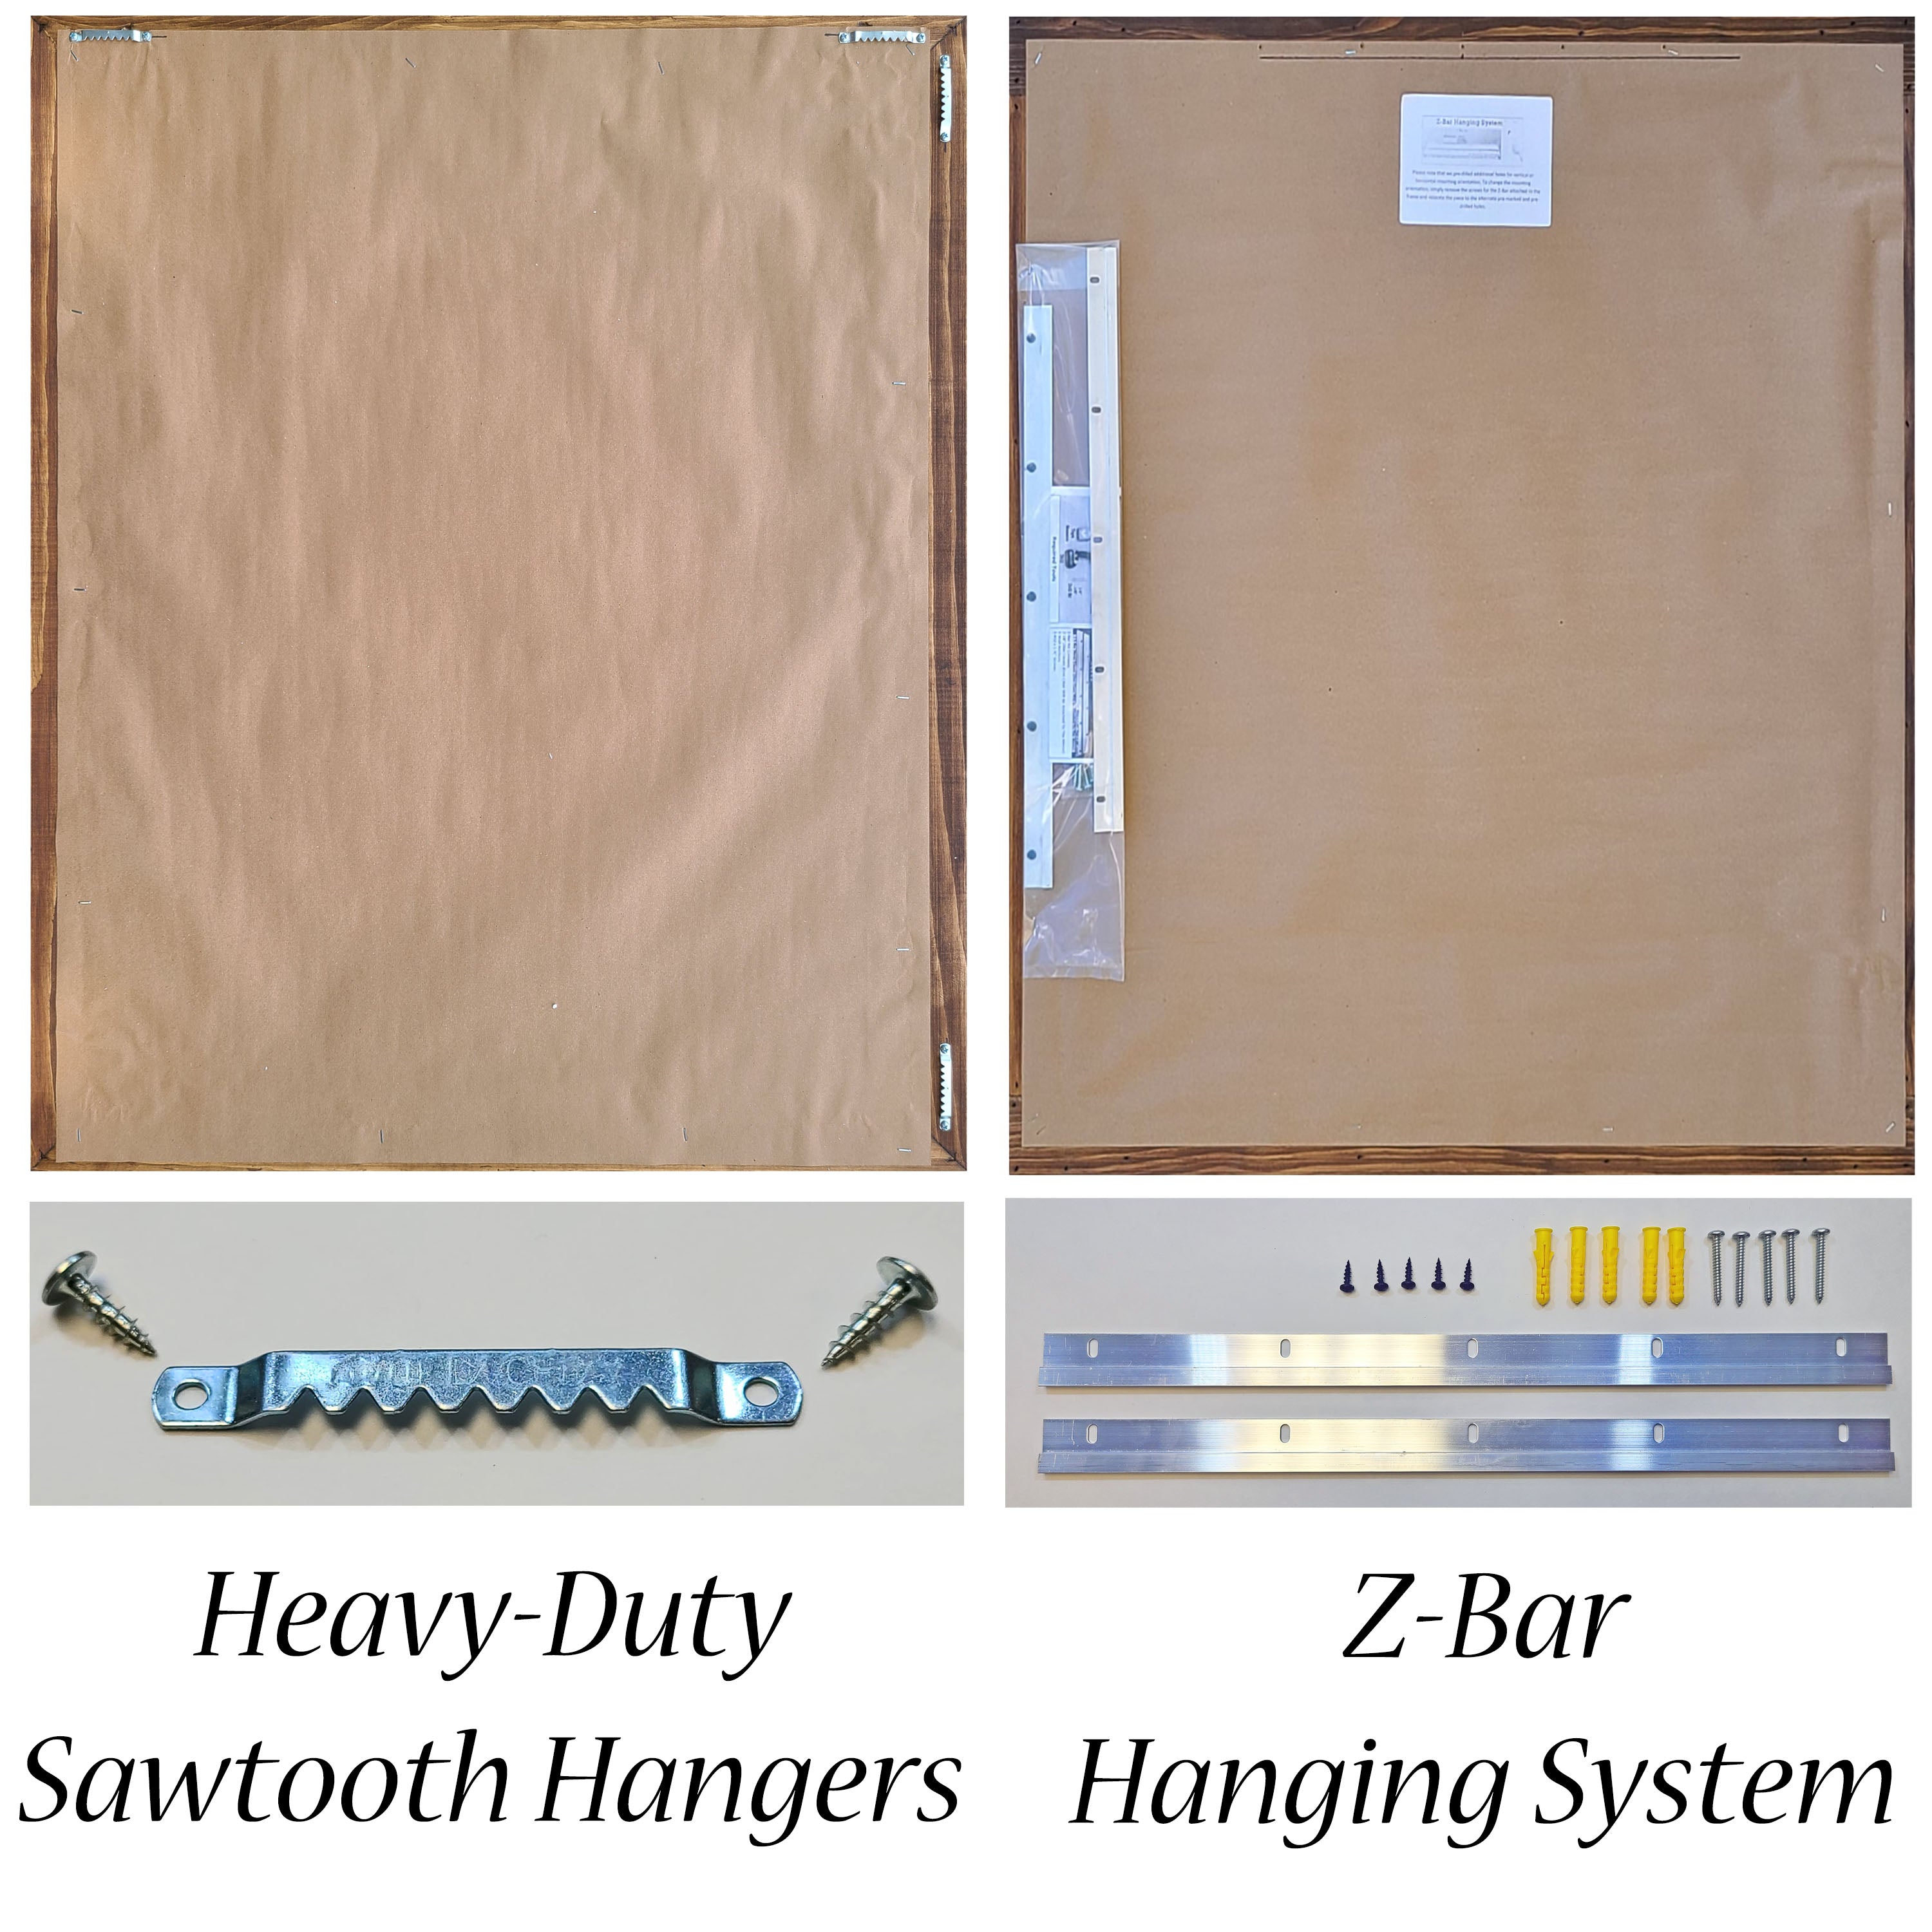 Hanging Hardware Sawtooth Hangers & ZBar Hanging System